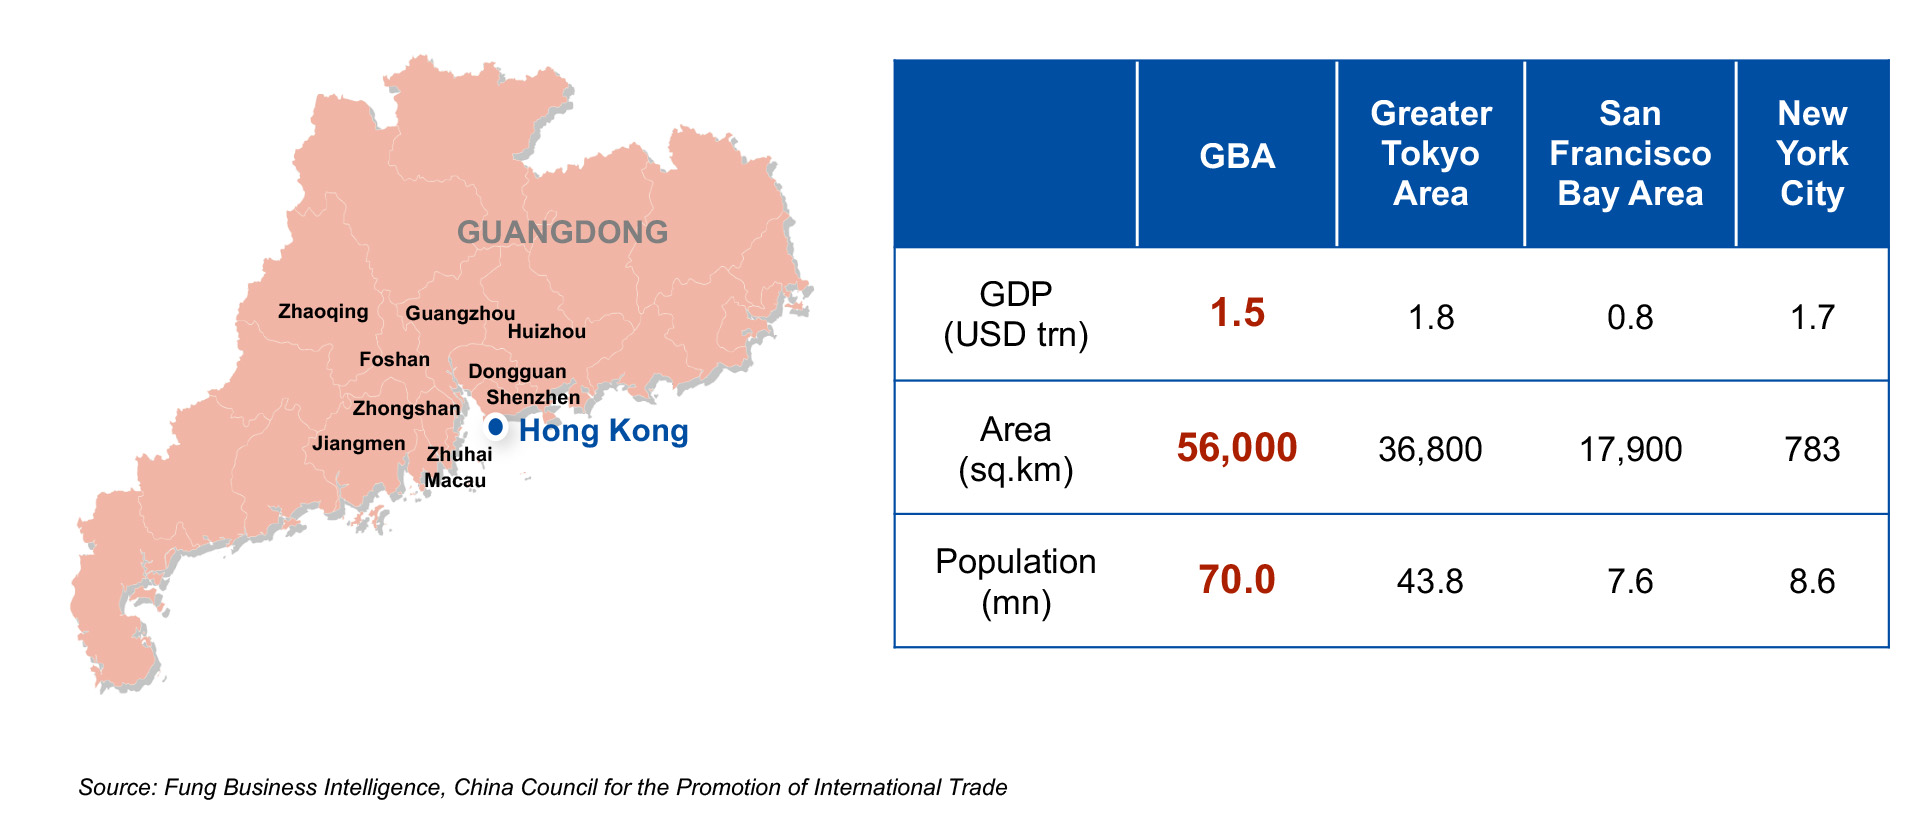 Guangdong-Hong Kong-Macao Bay Area (or Greater Bay Area)